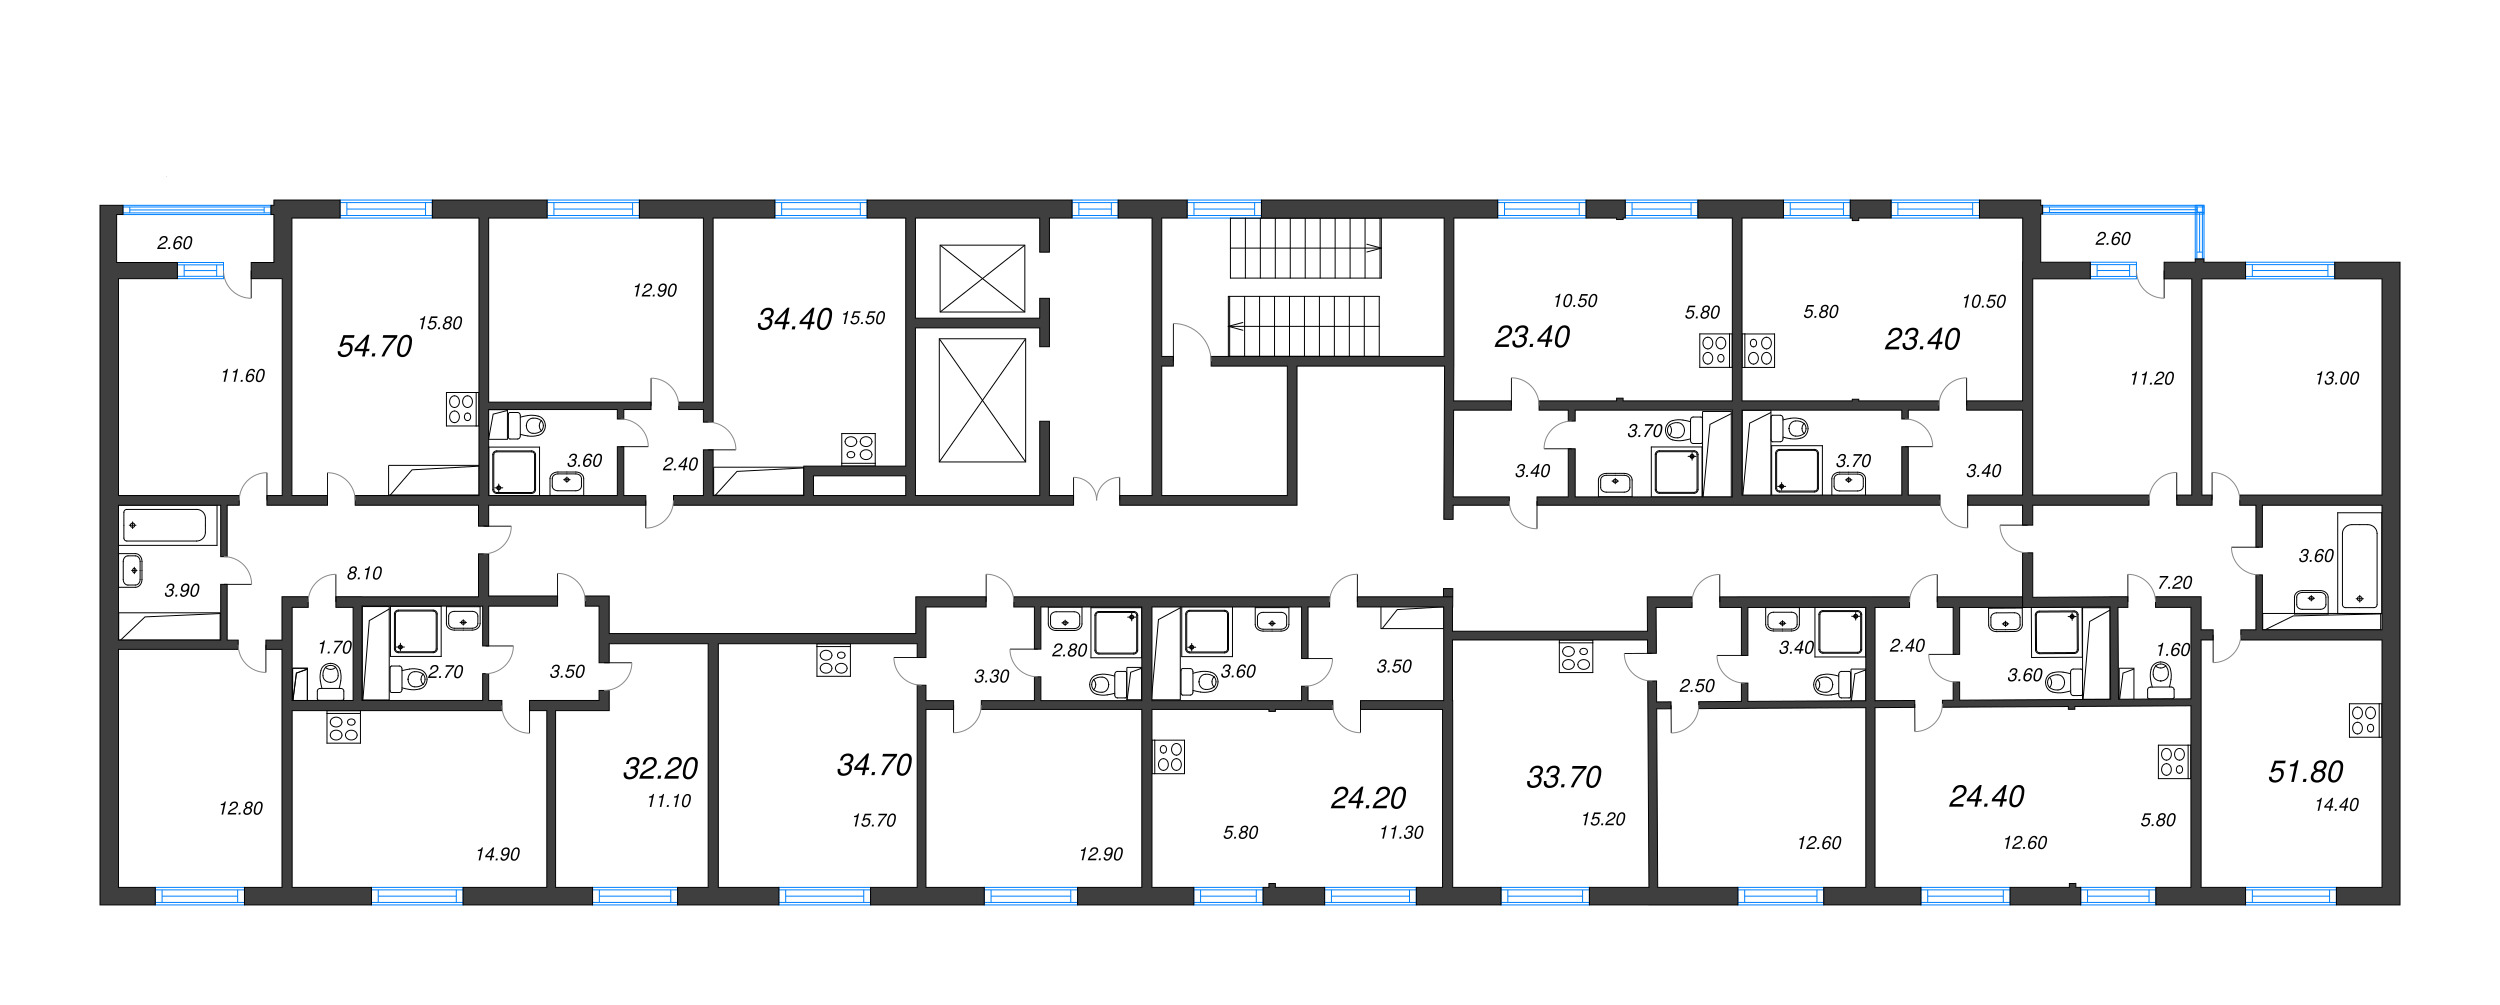 2-комнатная (Евро) квартира, 33.7 м² в ЖК "ЛСР. Ржевский парк" - планировка этажа